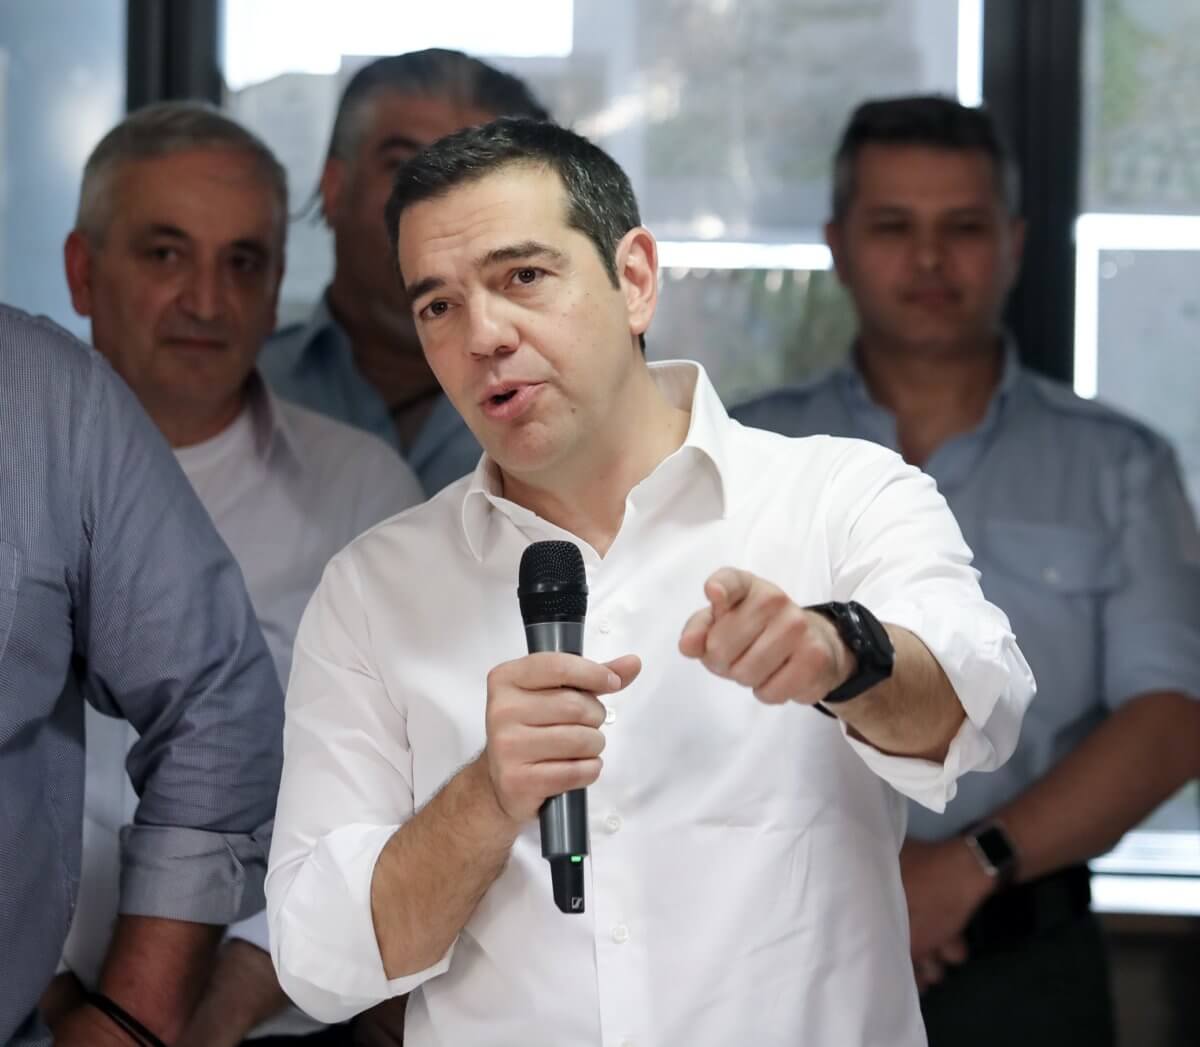 Εκλογές 2019 – Τσίπρας: Ο Μητσοτάκης συμβολίζει την Ελλάδα της φοροδιαφυγής και της ασυδοσίας!